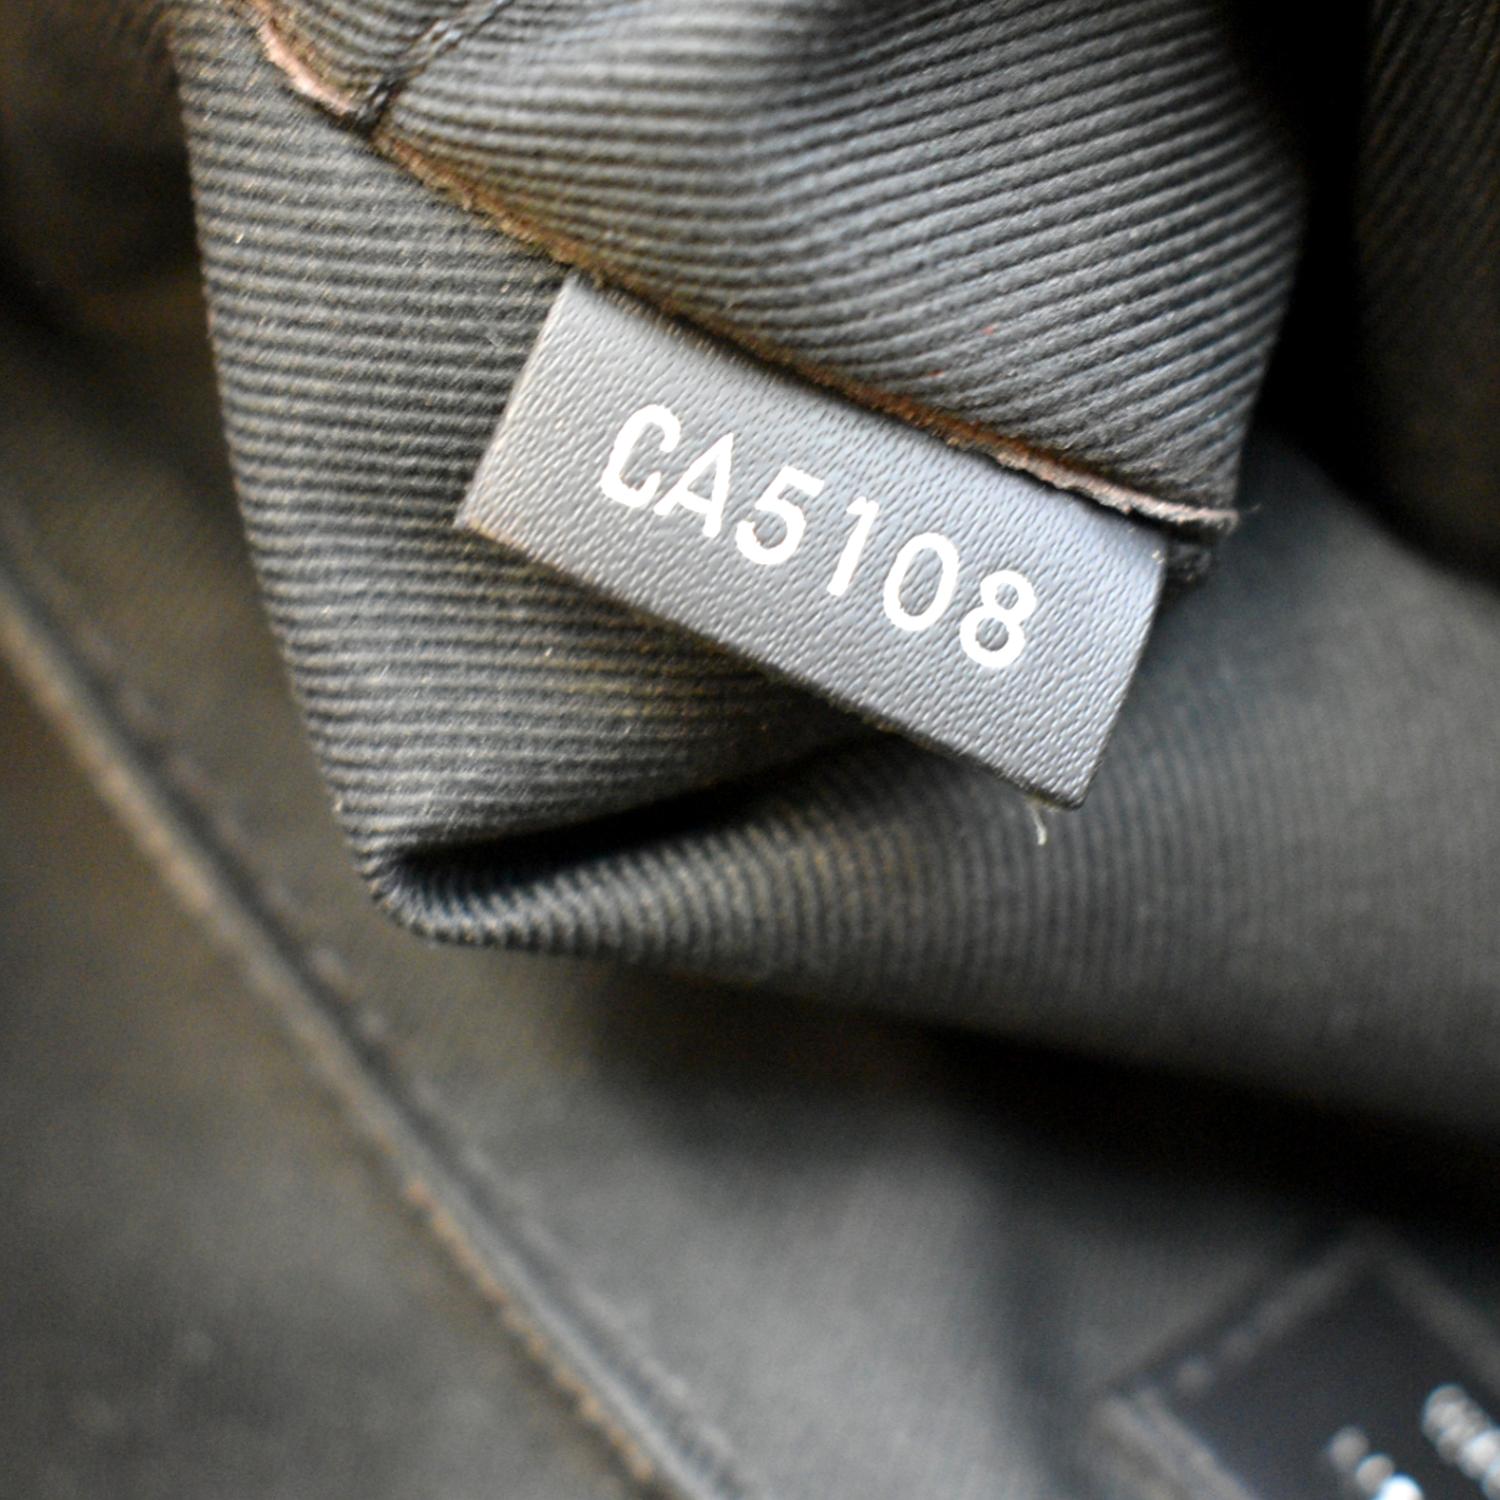 Louis Vuitton District PM Damier Graphite Shoulder Bag on SALE